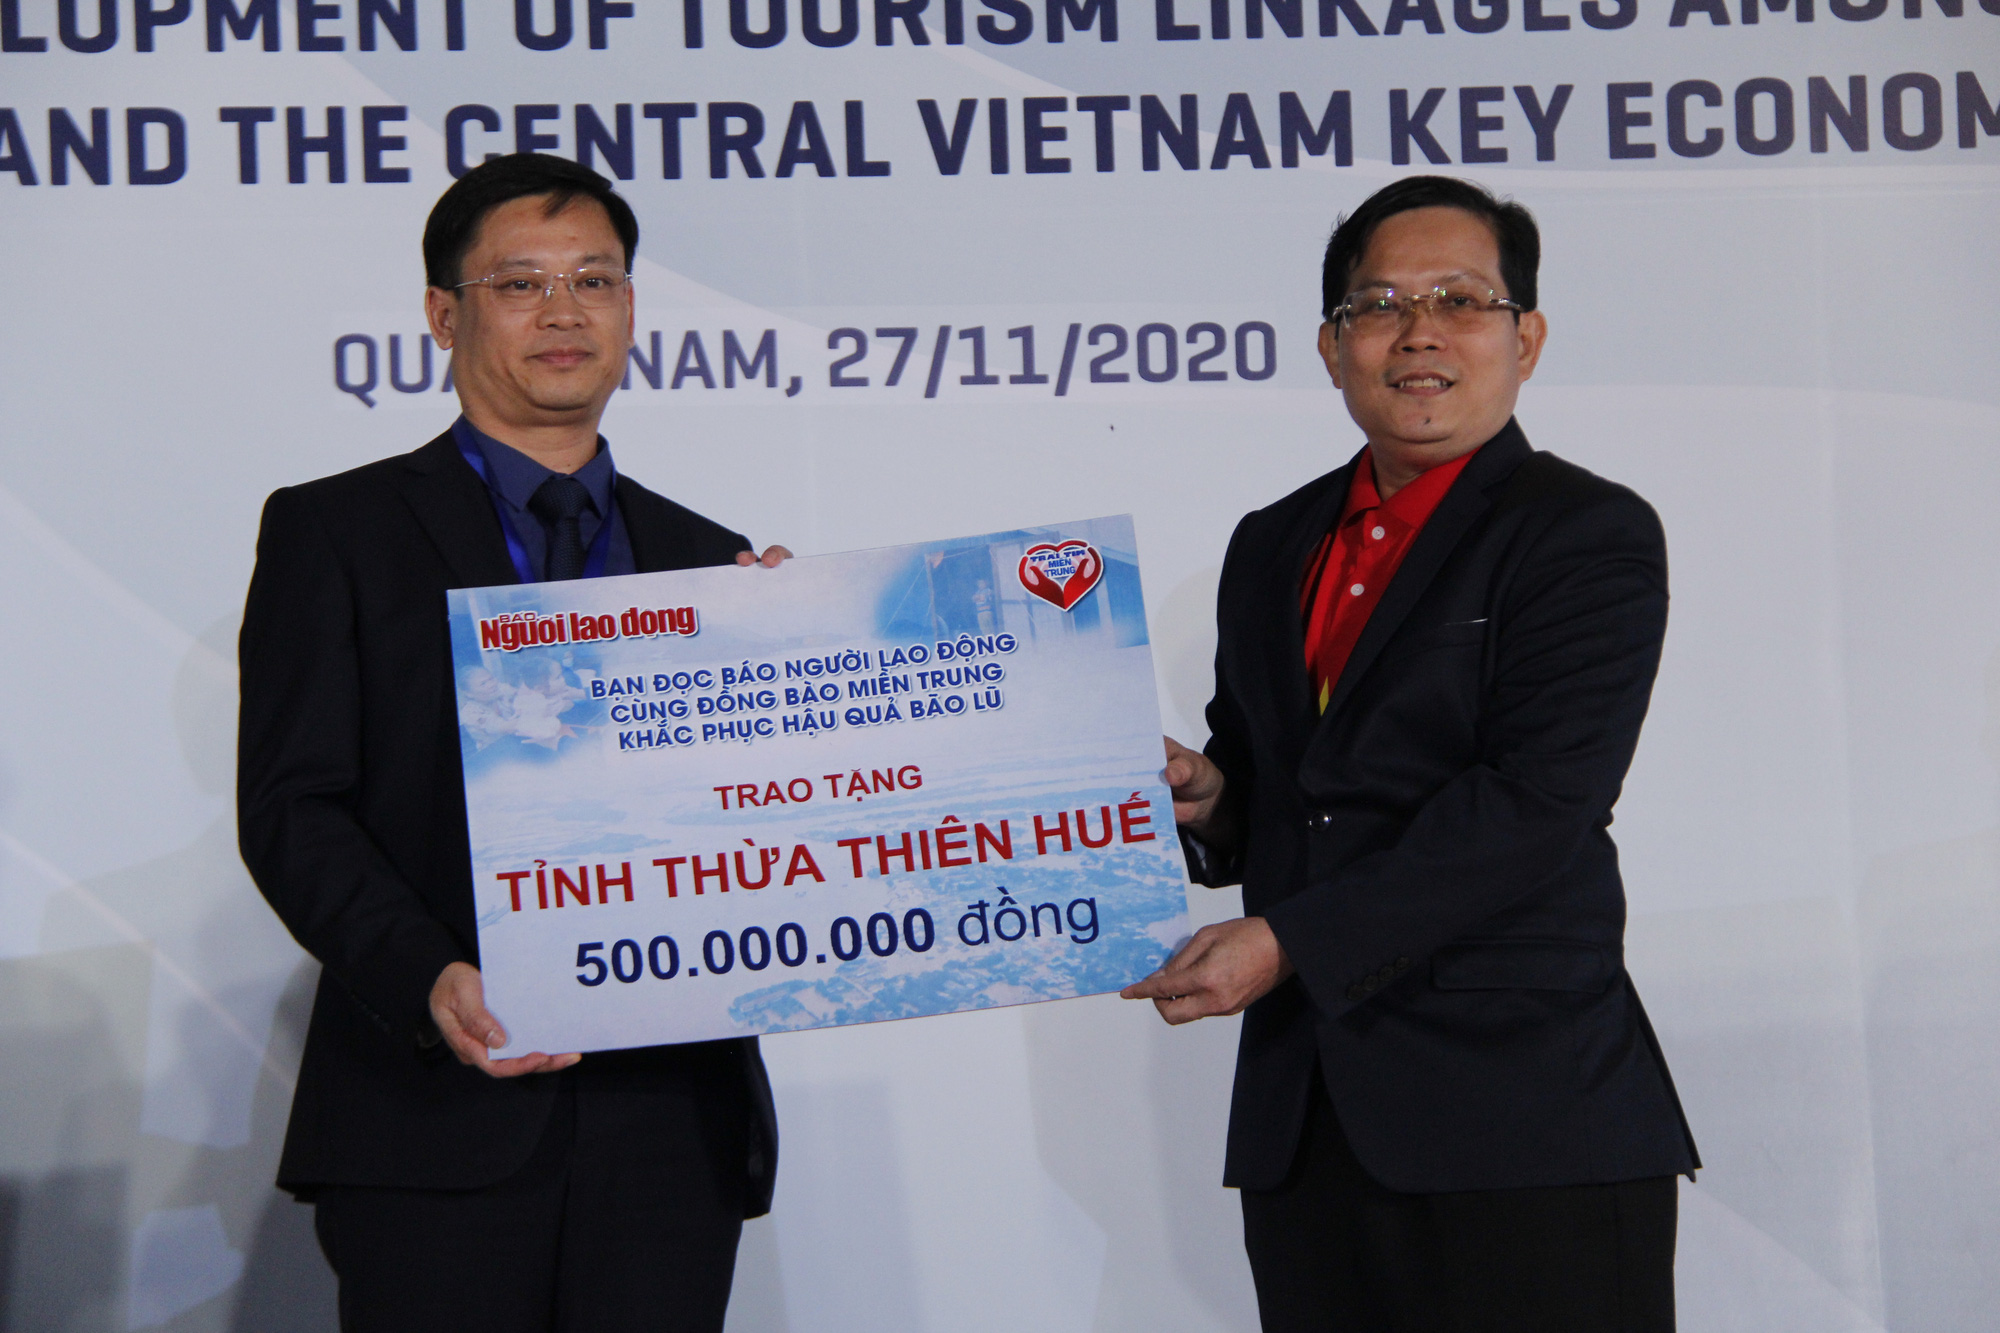 Báo Người Lao Động trao 50.000 lá cờ Tổ quốc và 1,7 tỉ đồng cho miền Trung - Ảnh 2.